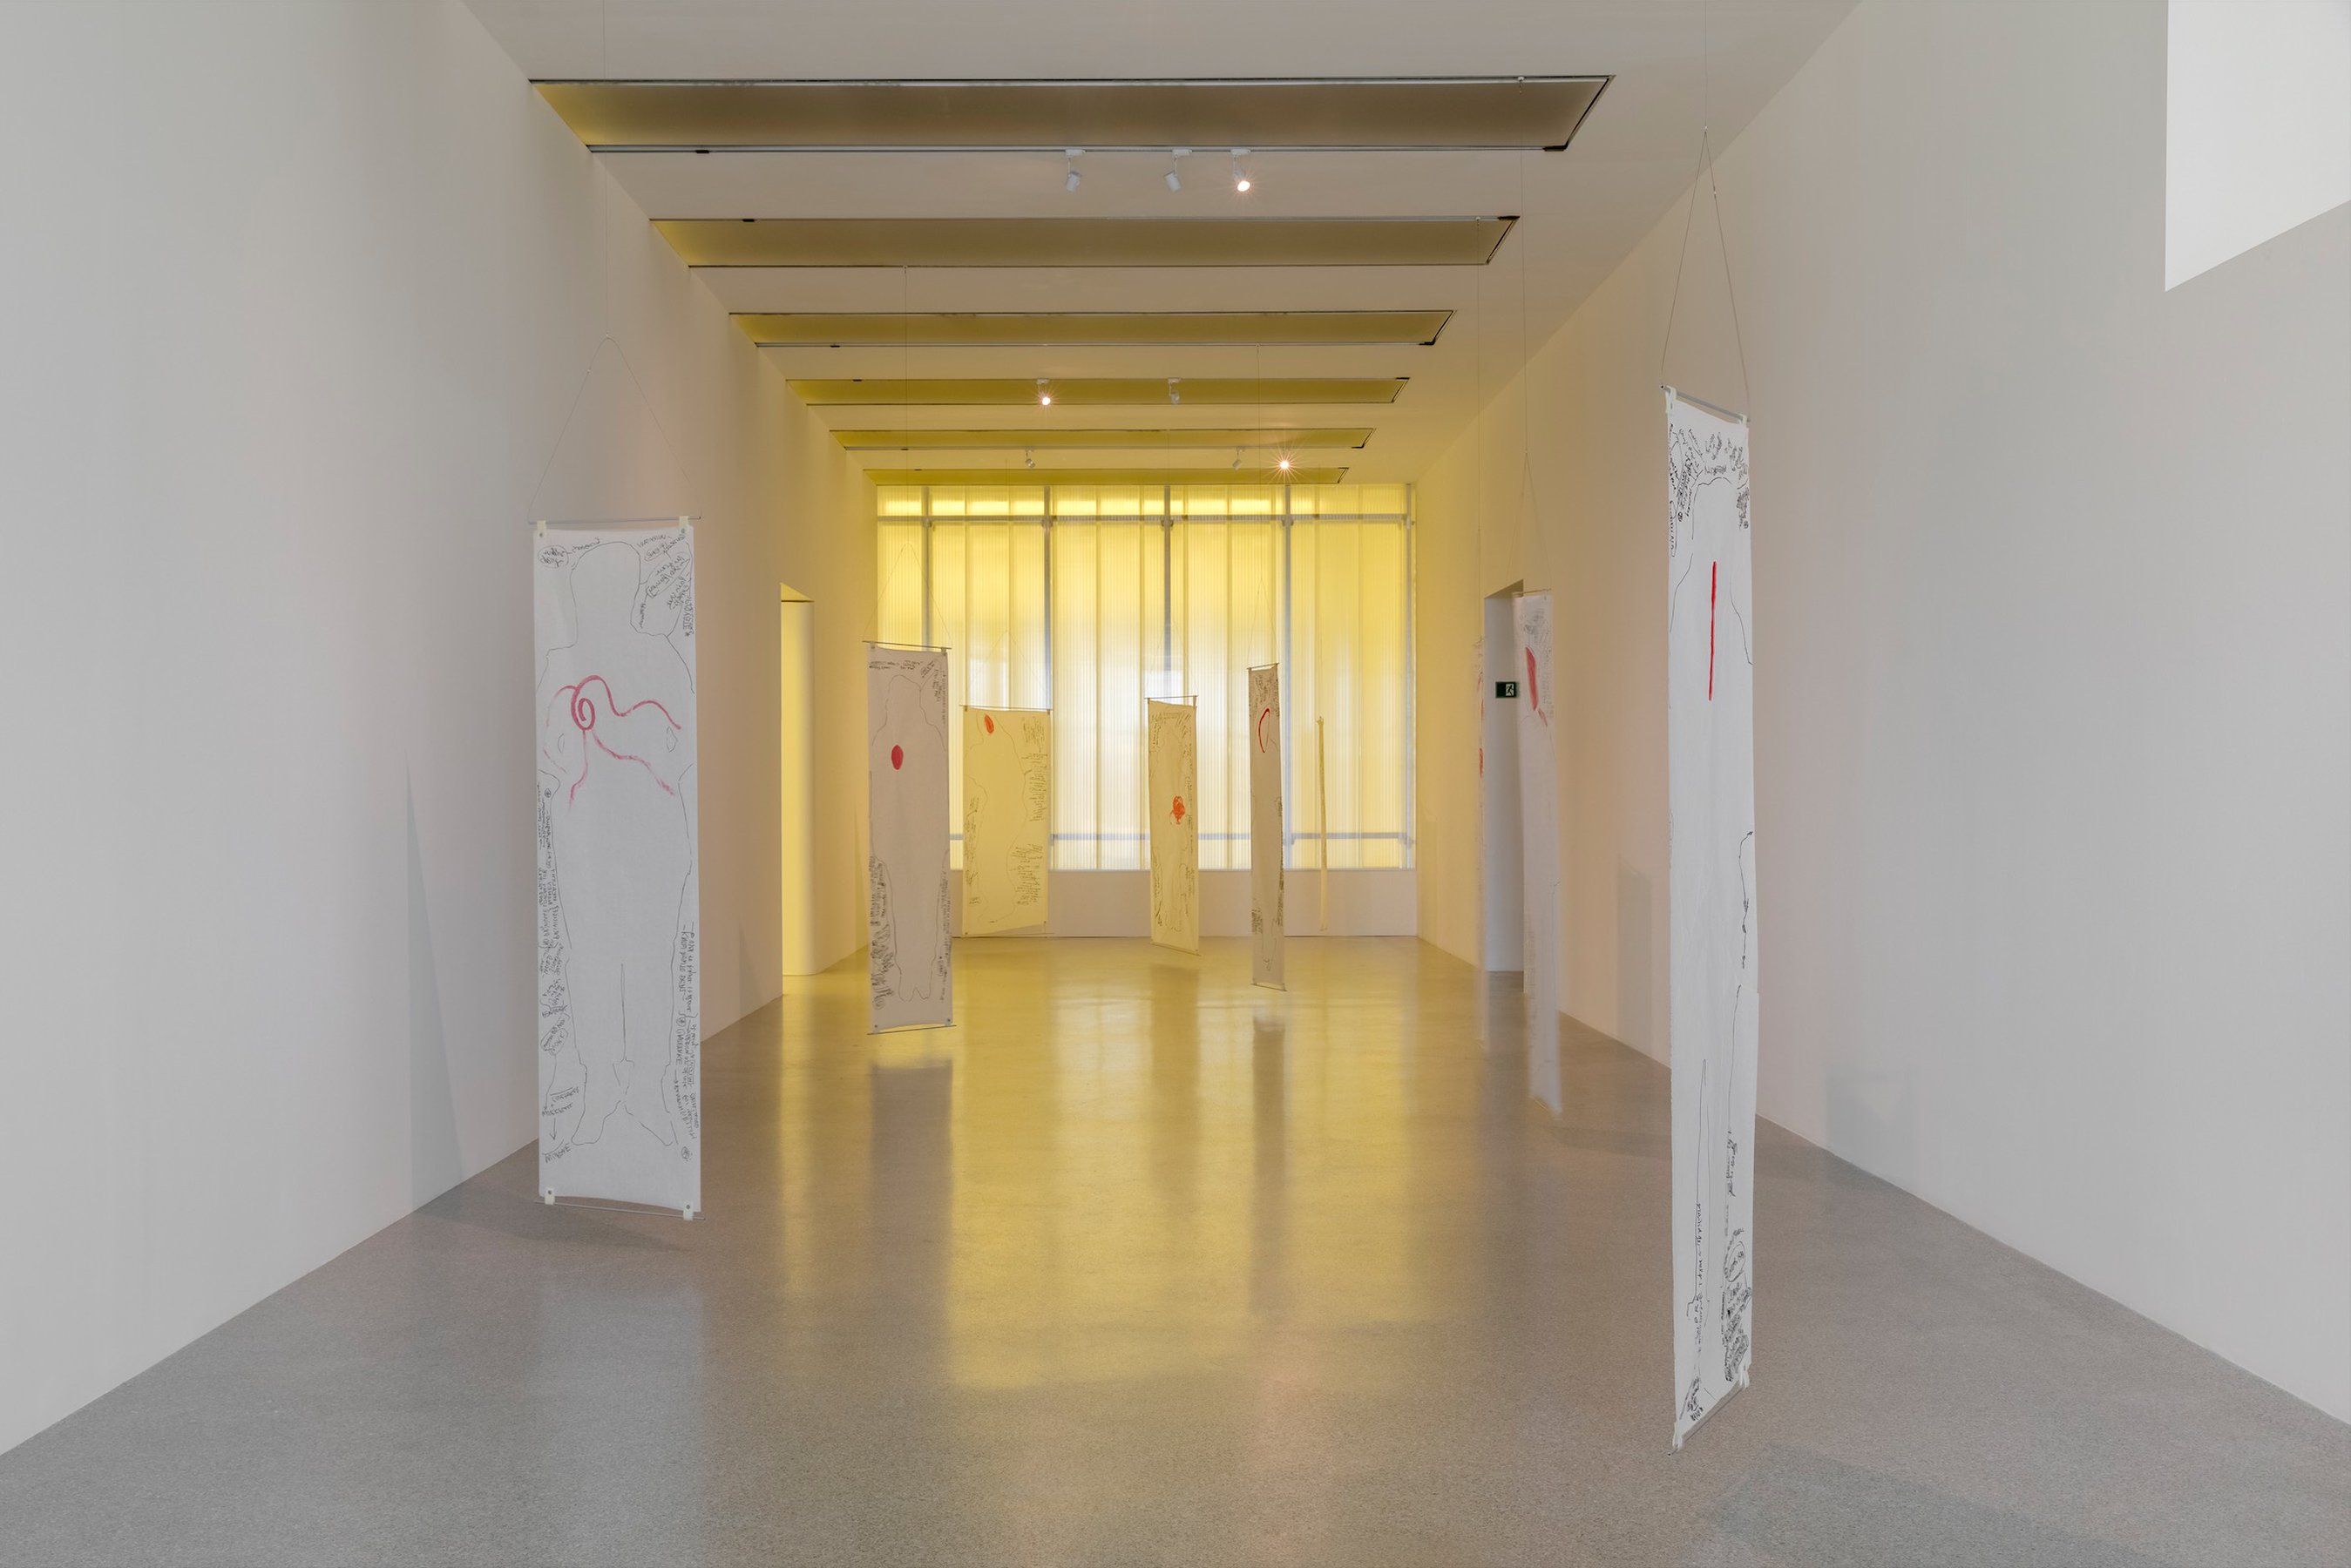 Installation view at Museion, Bolzano, 2022